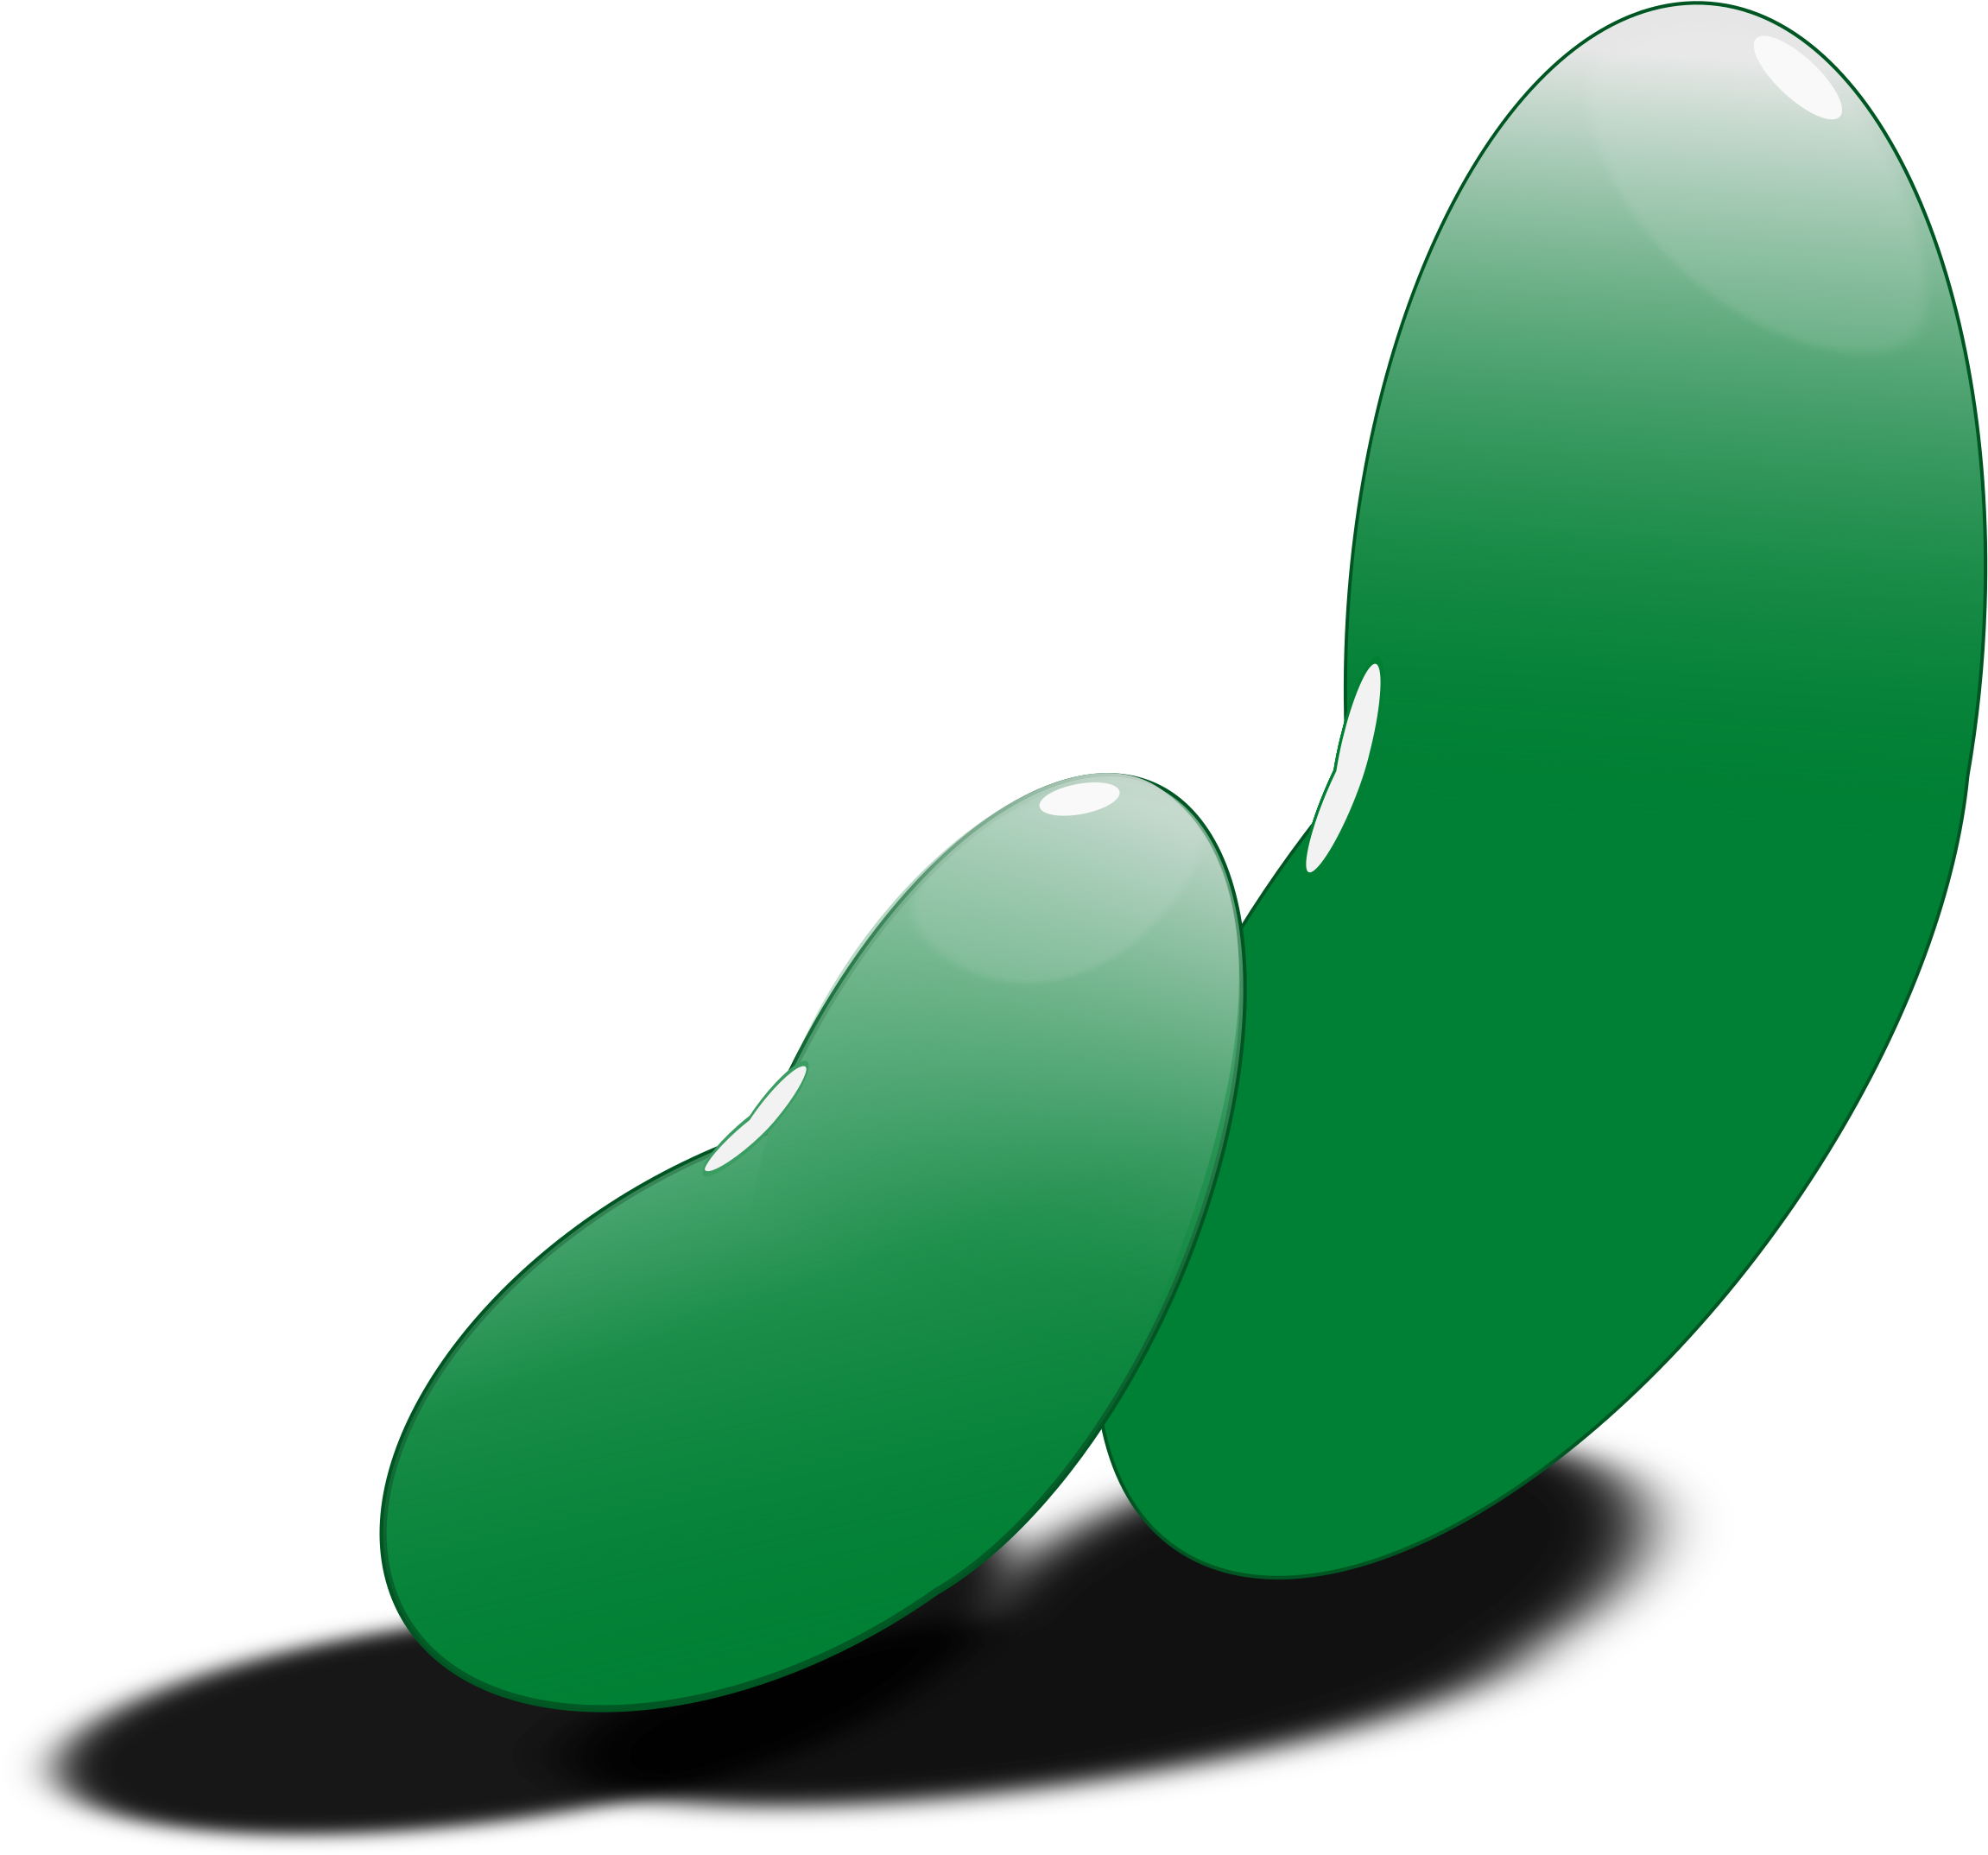 Beans - Green Bean Seed Clipart (2400x2613)